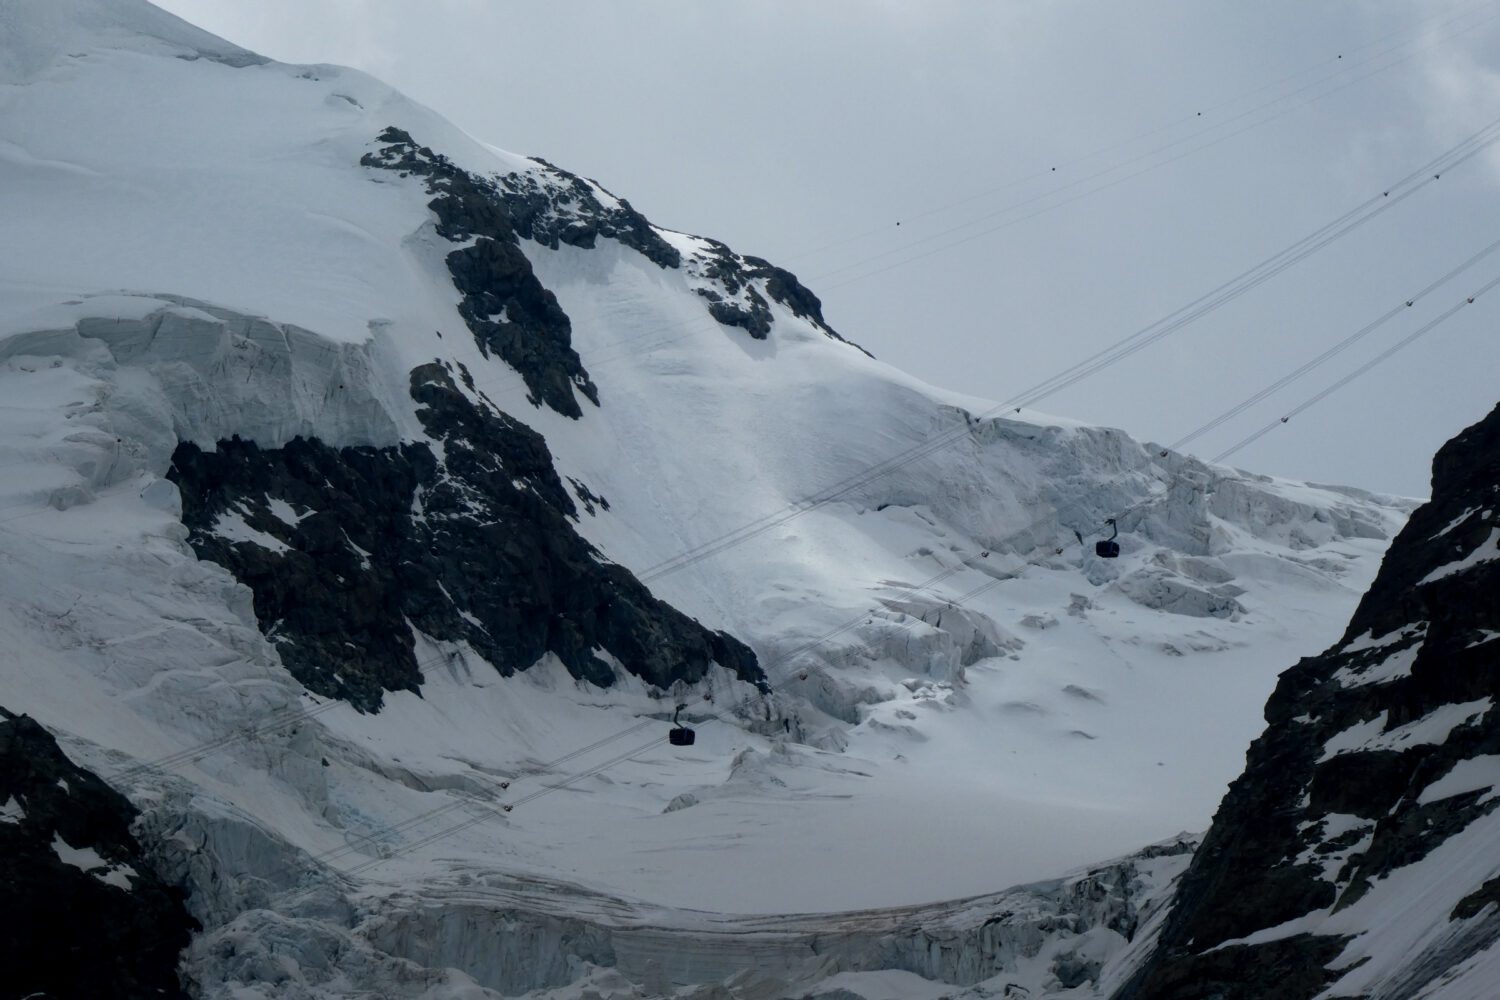 Tour du Cervin, matterhorn glacier paradise